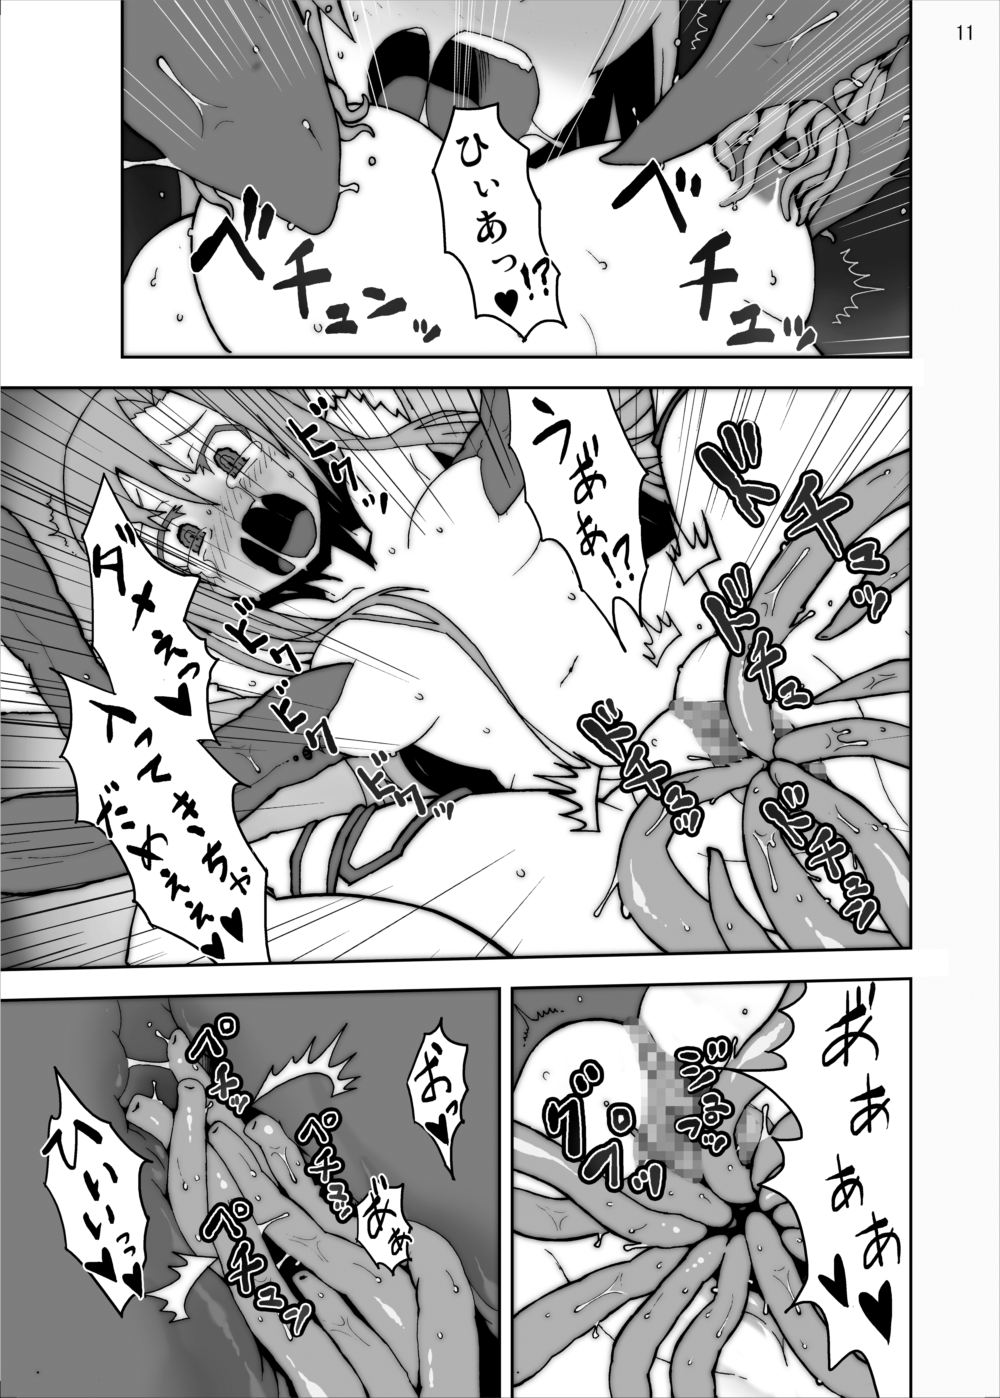 [Studio Nunchaku] Asuna in Tentacle Party Rape Online (Sword Art Online) page 10 full